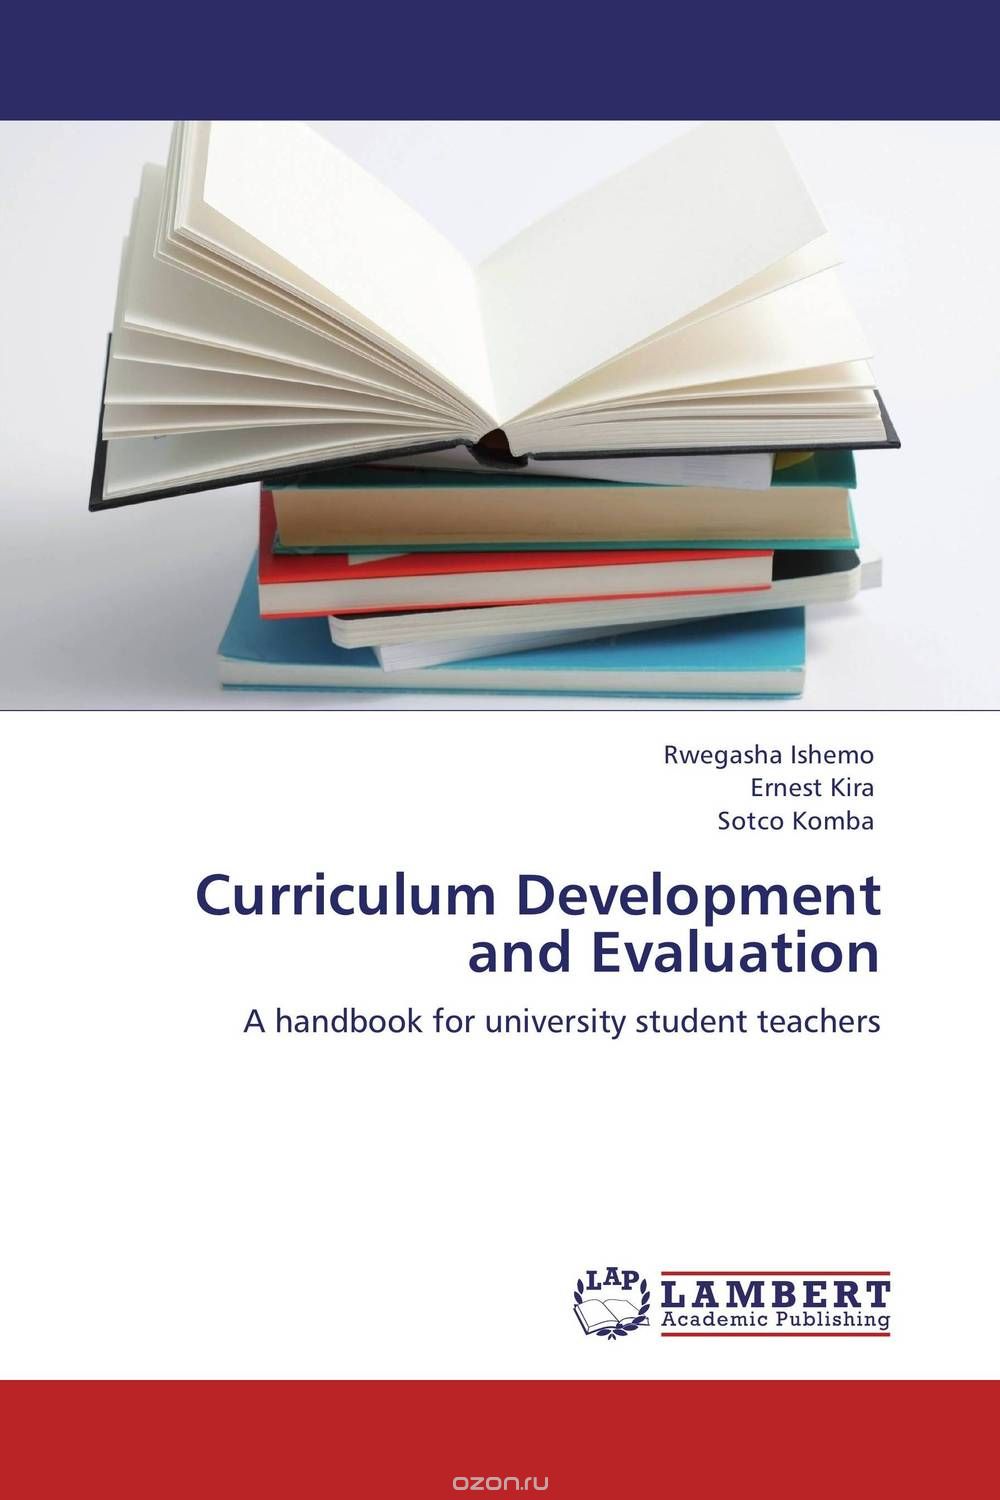 Скачать книгу "Curriculum Development and Evaluation"